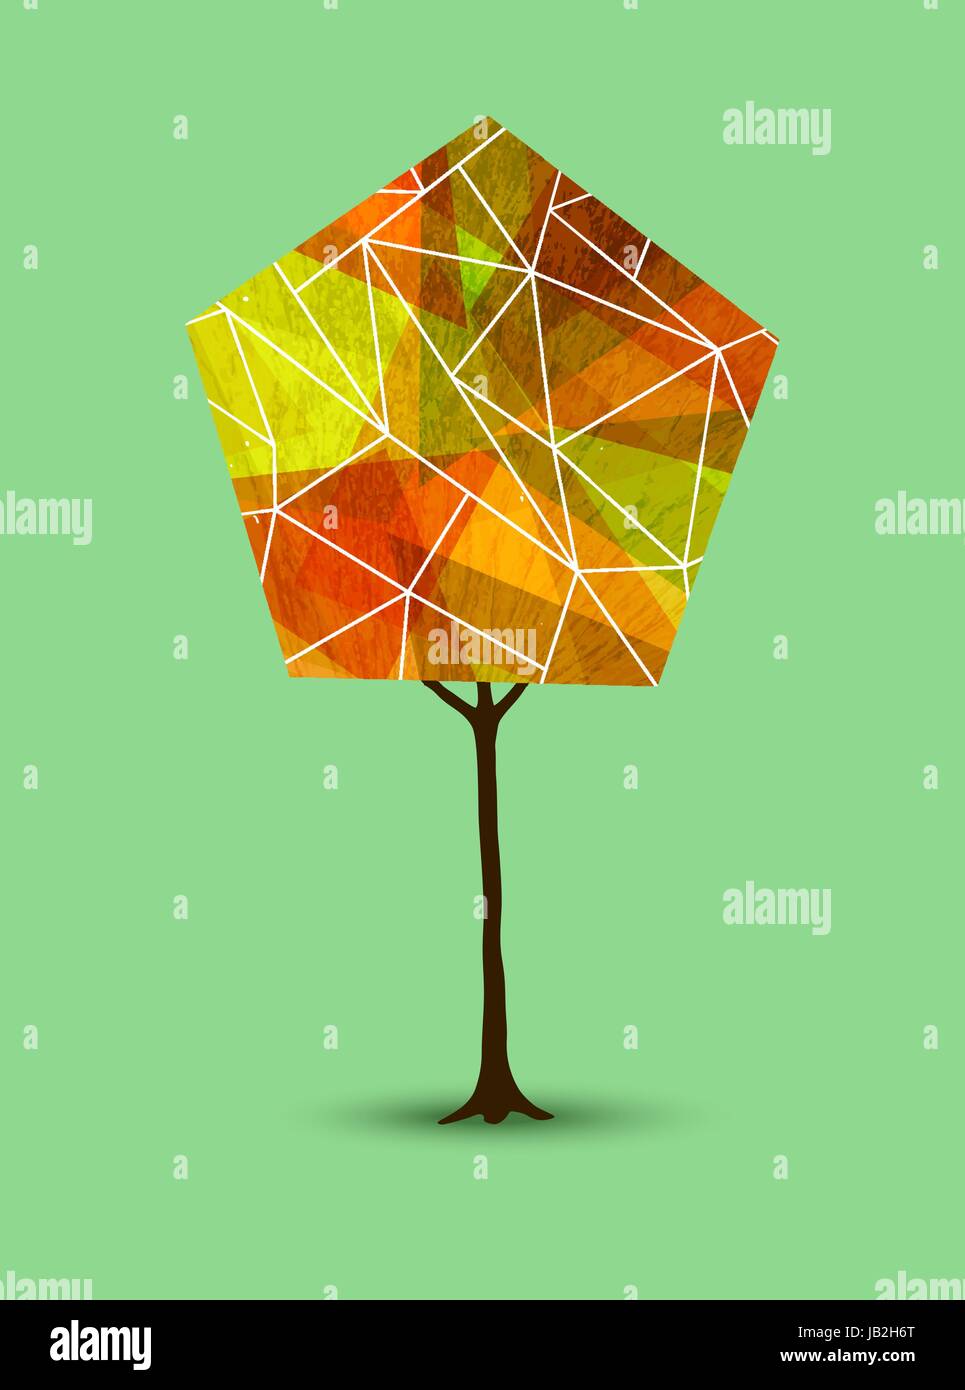 Illustration de l'arbre abstrait avec des formes géométriques en saison d'Automne Couleurs. Vecteur EPS10. Illustration de Vecteur